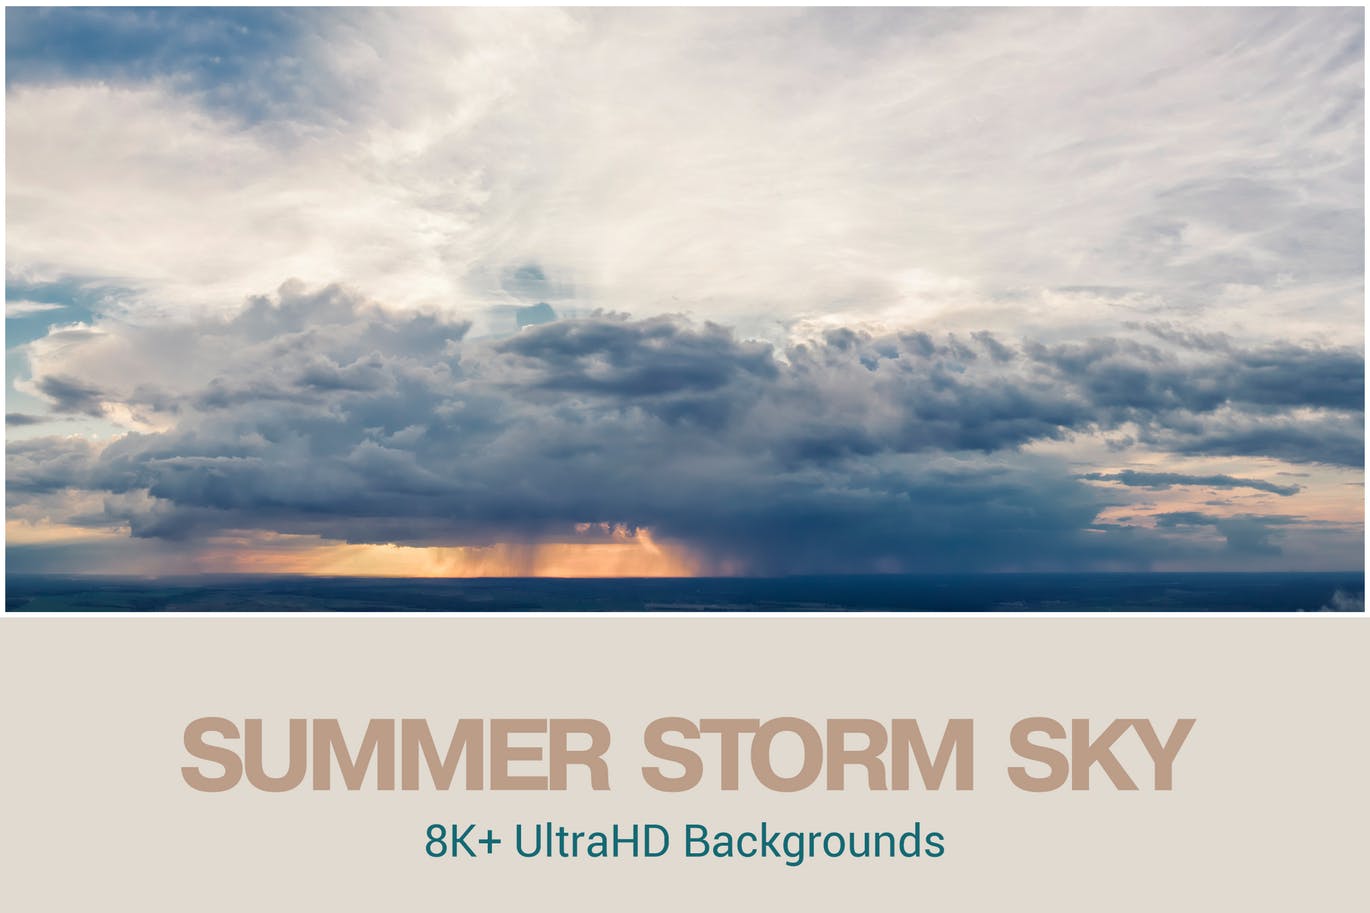 8K+超高清夏季风暴云天空背景图素材 8K+ UltraHD Summer Storm Backgrounds插图